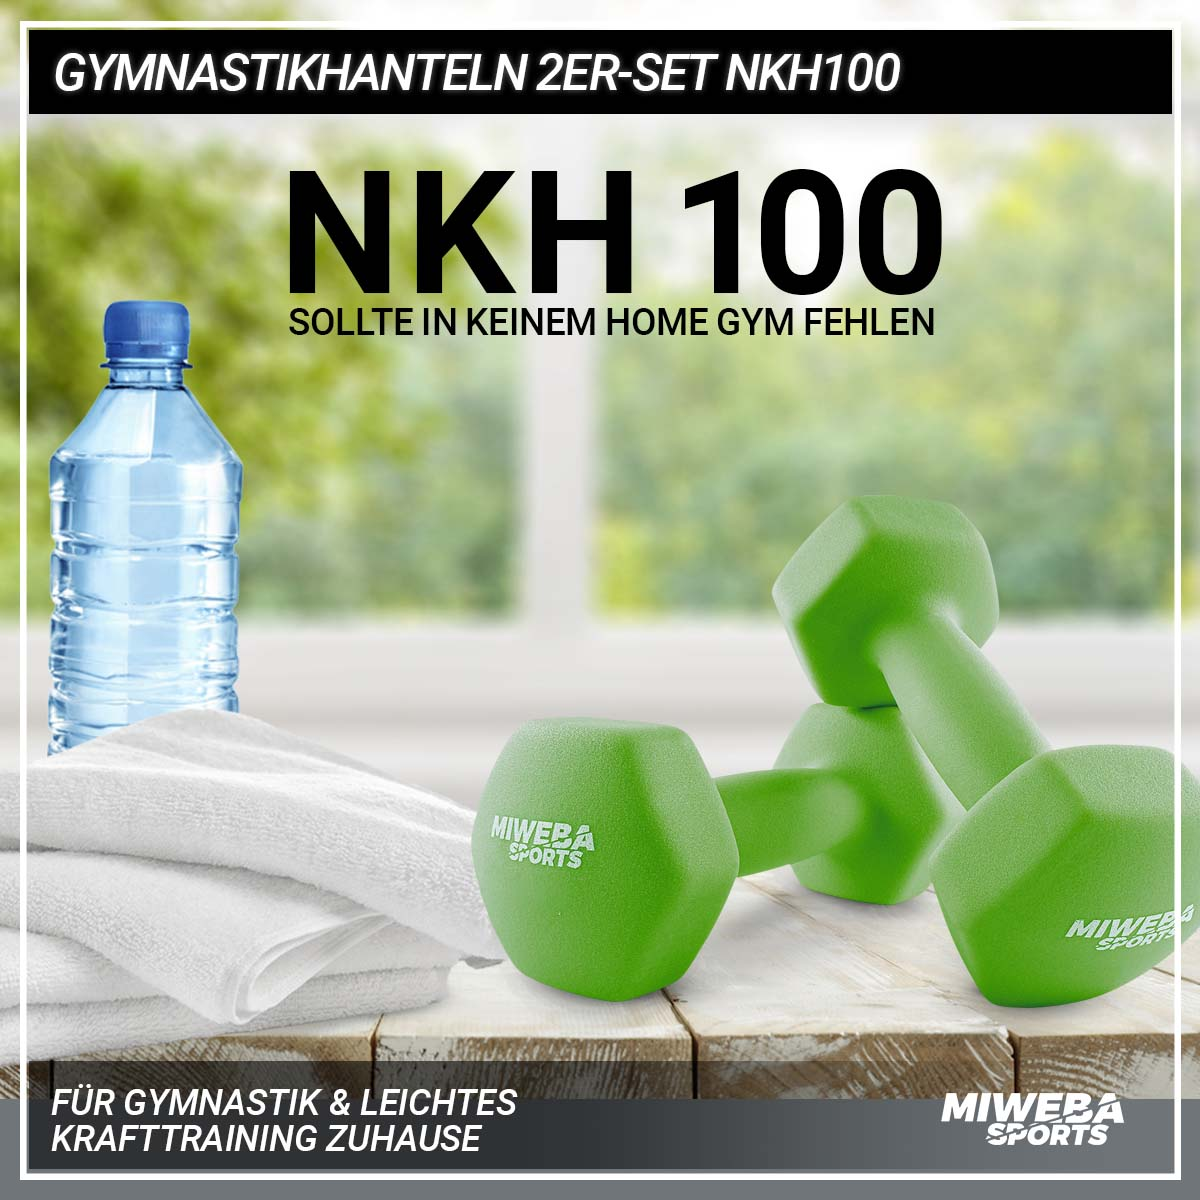 2er NKH100 Set Gymnastikhanteln MIWEBA Grün SPORTS Kurzhantel,